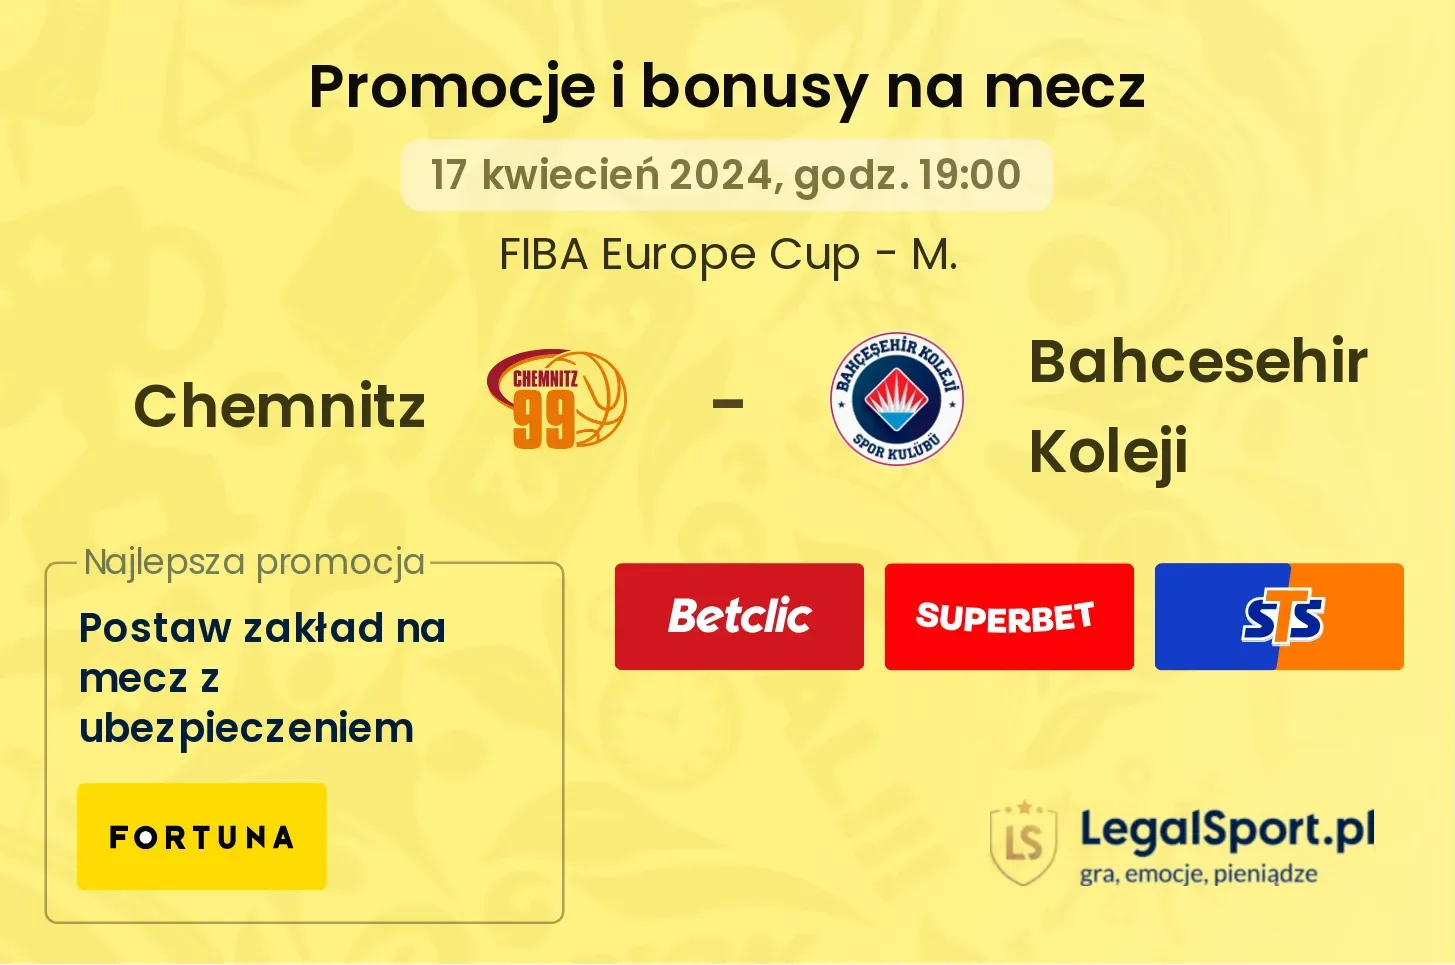 Chemnitz - Bahcesehir Koleji promocje bonusy na mecz